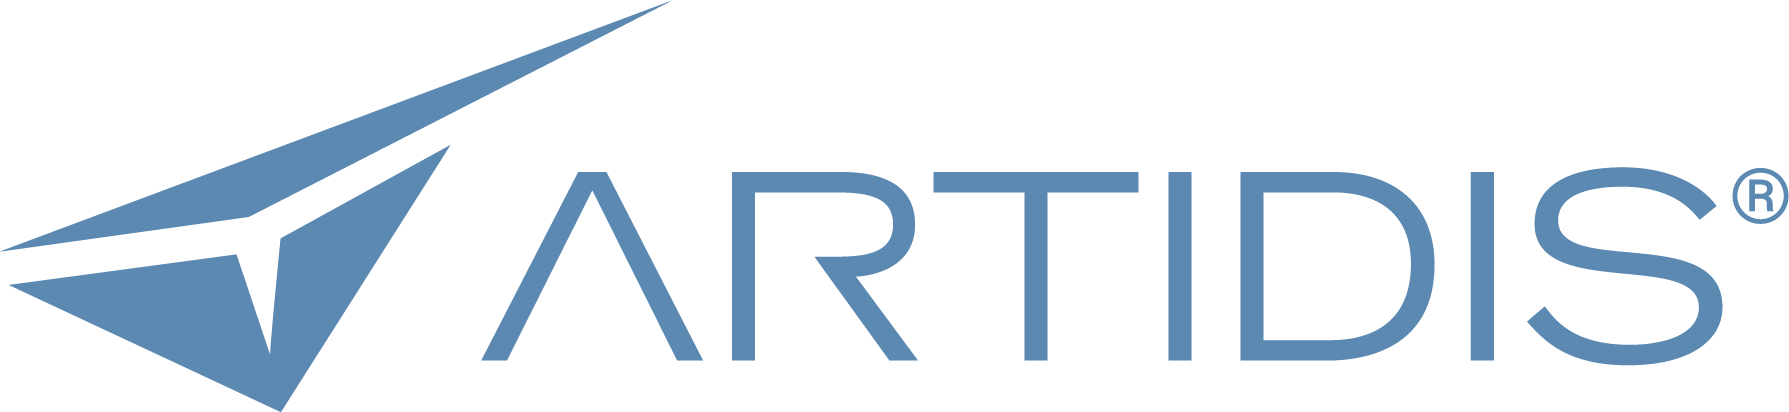 Artidis-Logo_Blue.png